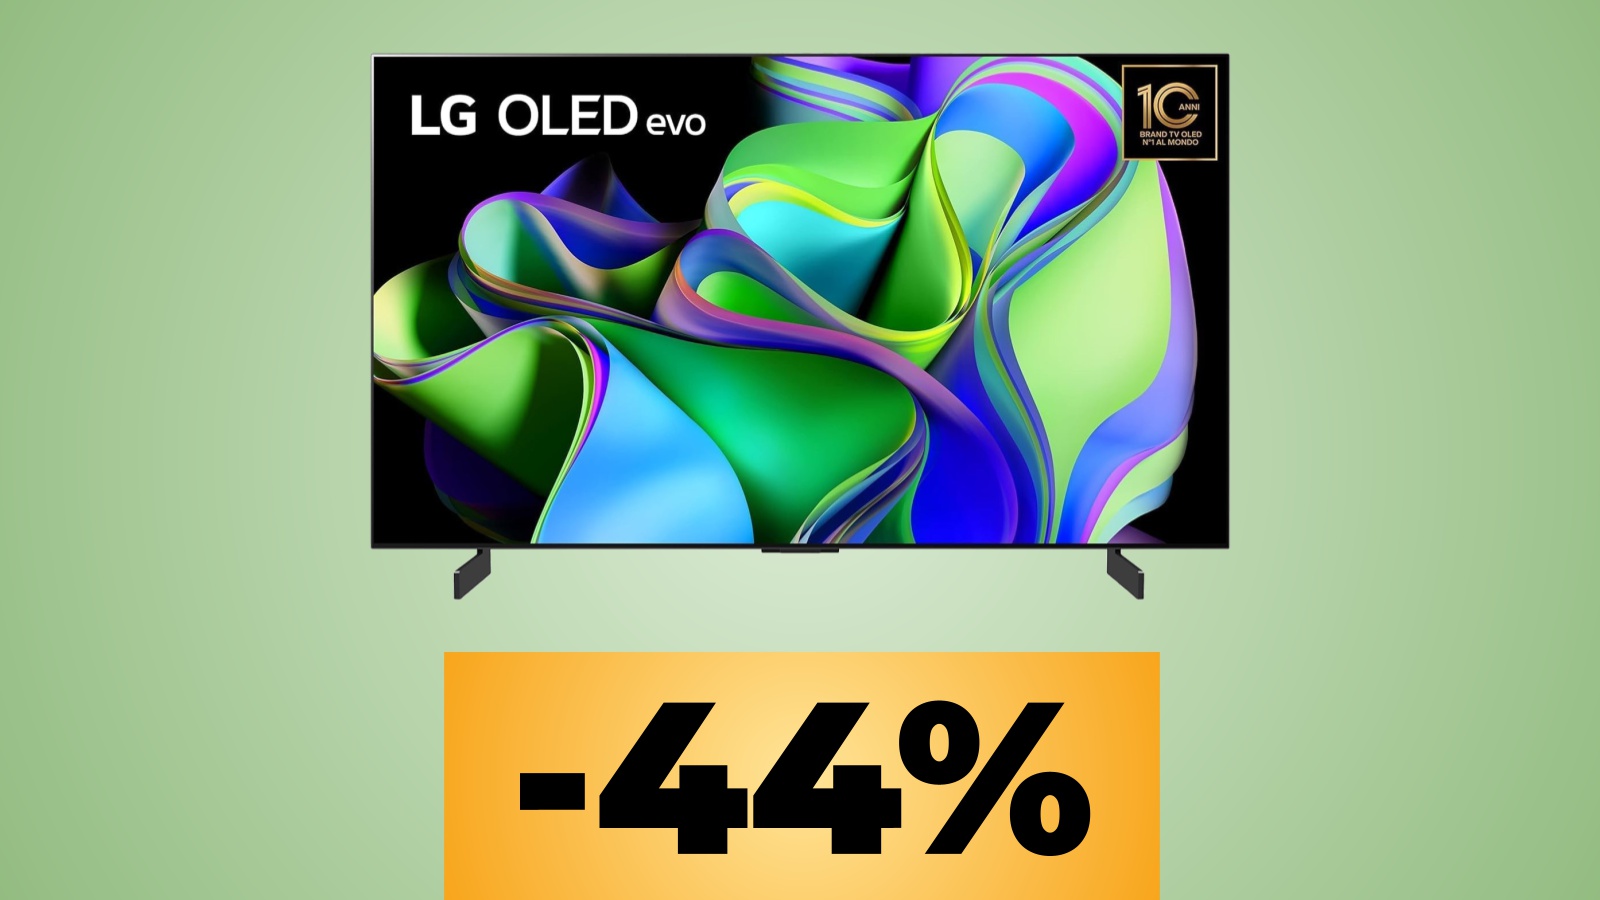 La smart TV LG OLED 42 pollici in 4K 120 Hz con VRR è in forte sconto su Amazon